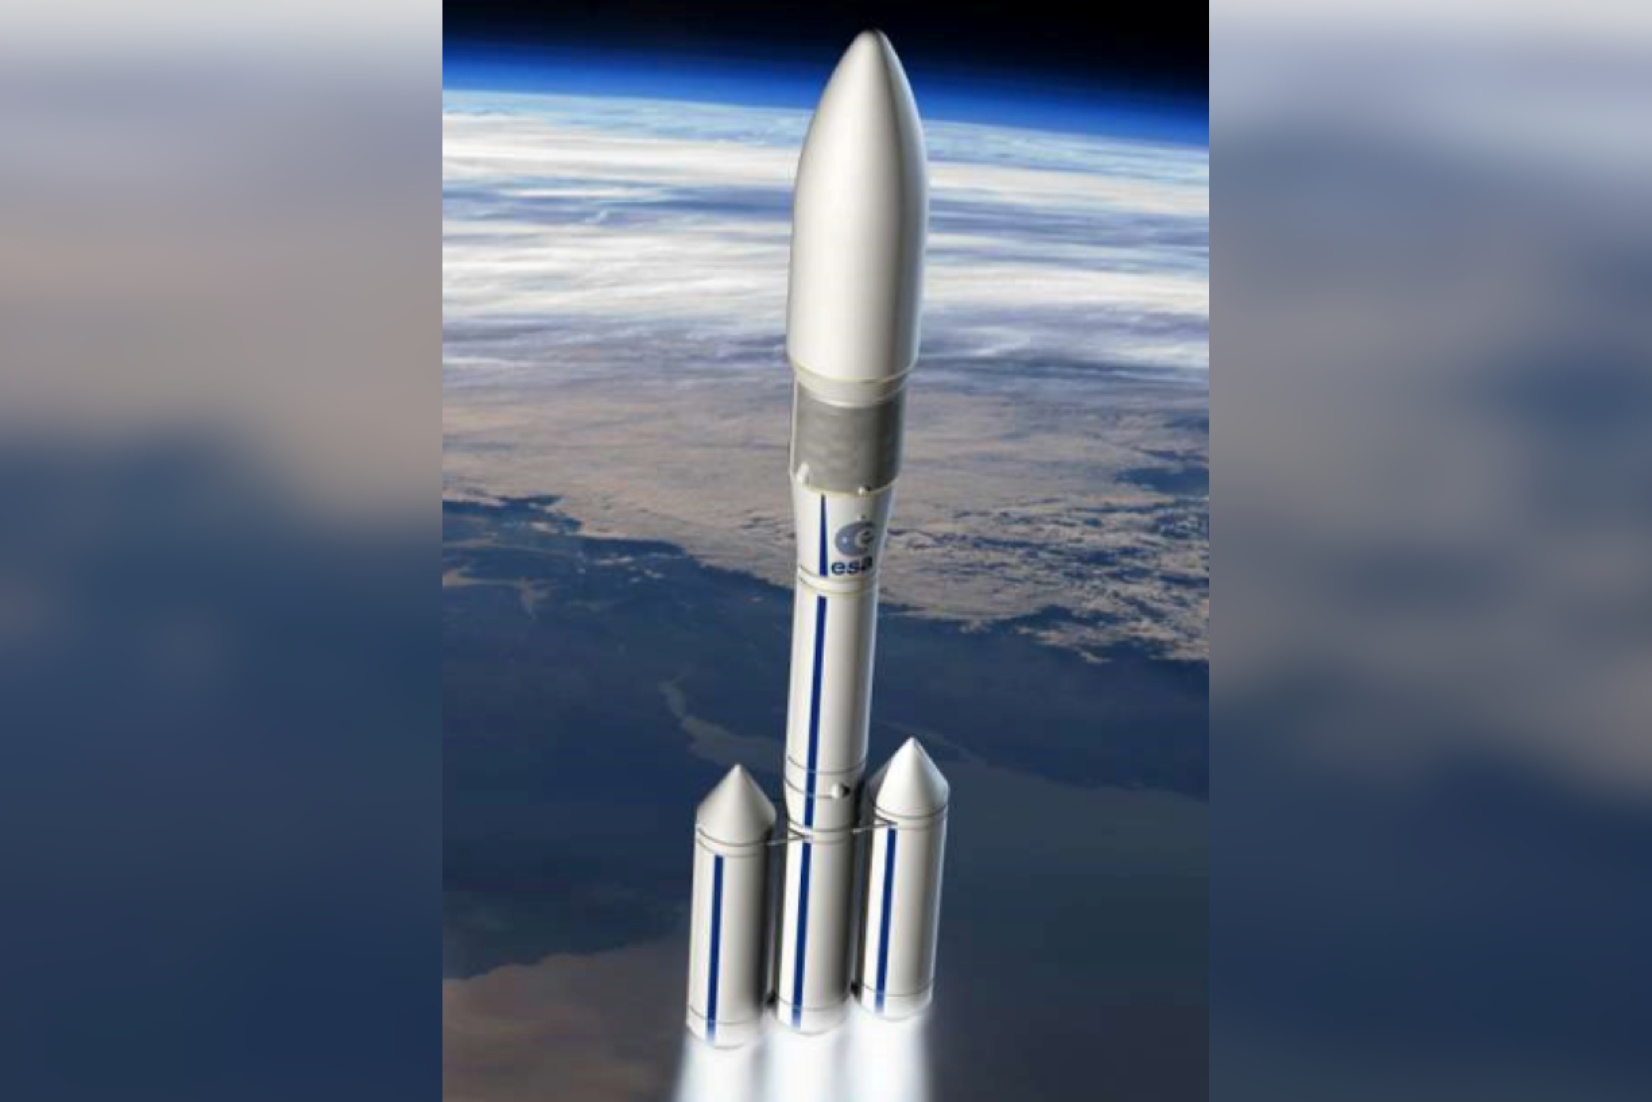 Notre savoir-faire en thermoformage, usinage, assemblage et application peinture au service de la fusée Ariane 6